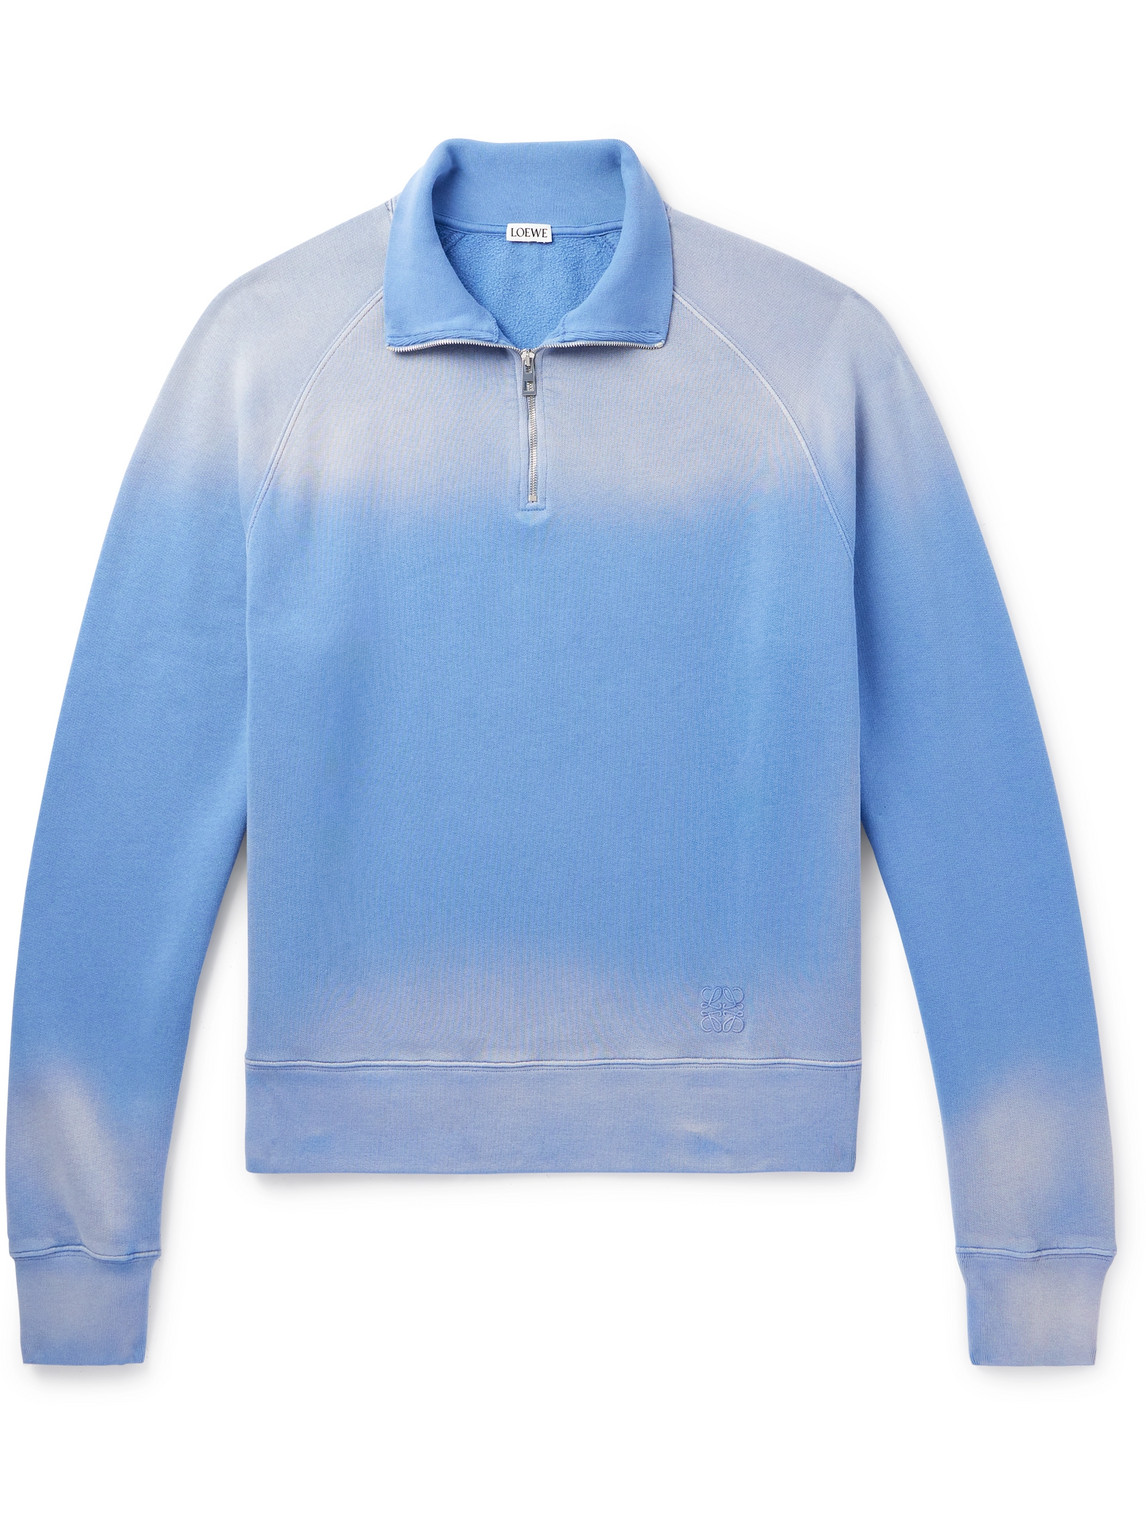 LOEWE - Anagram Logo-Embroidered Tie-Dyed Cotton-Jersey Half-Zip Sweatshirt - Men - Blue - M von LOEWE